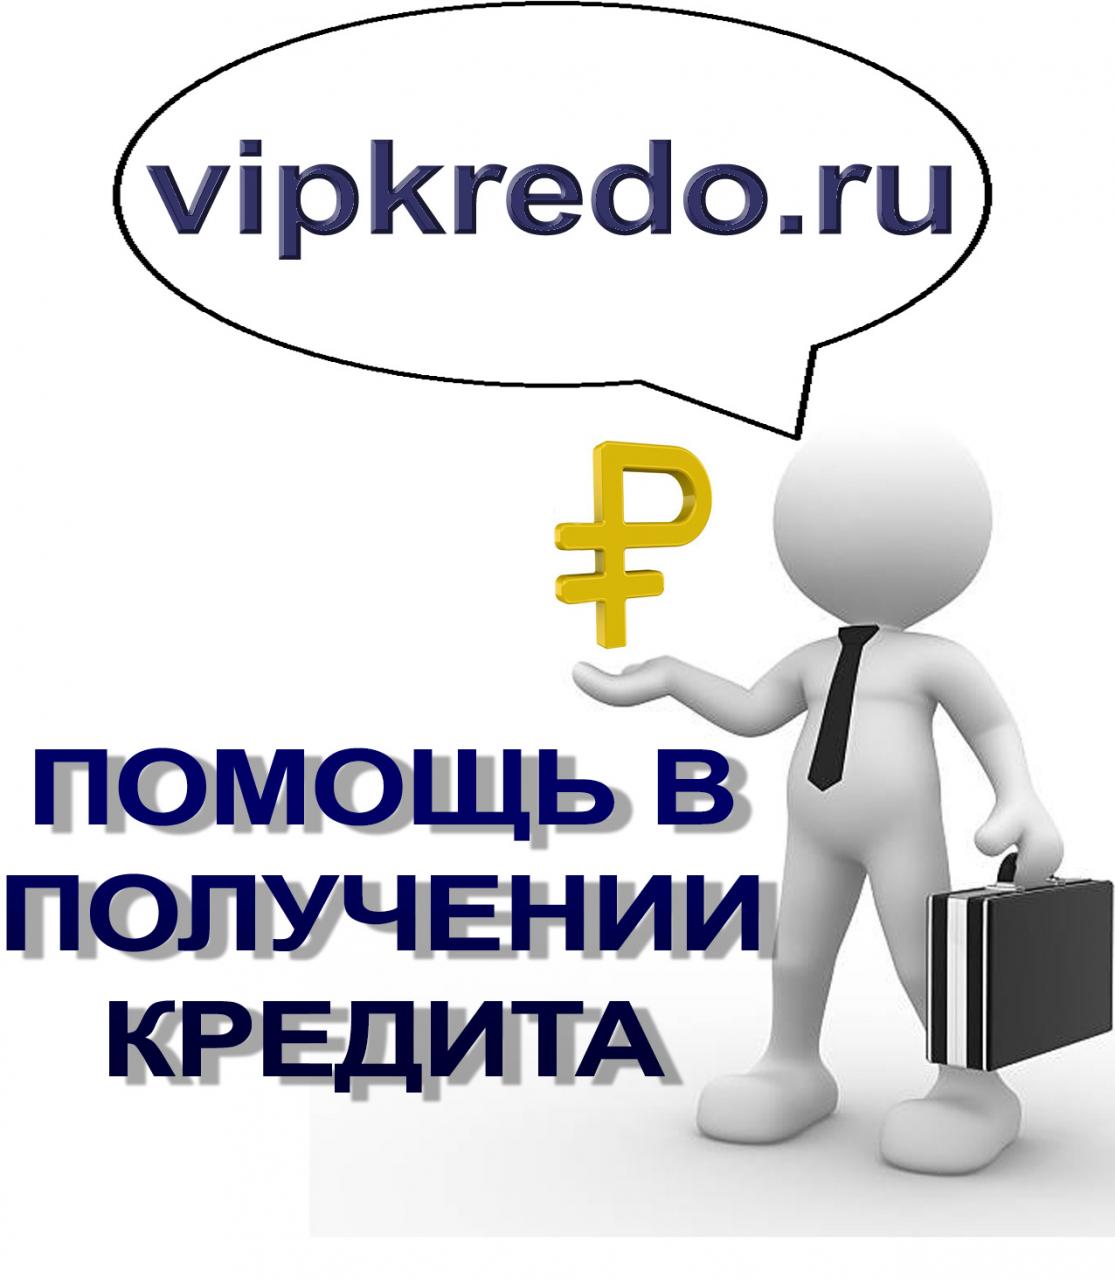 Профессиональная помощь в получении кредита, ипотеки. Москва